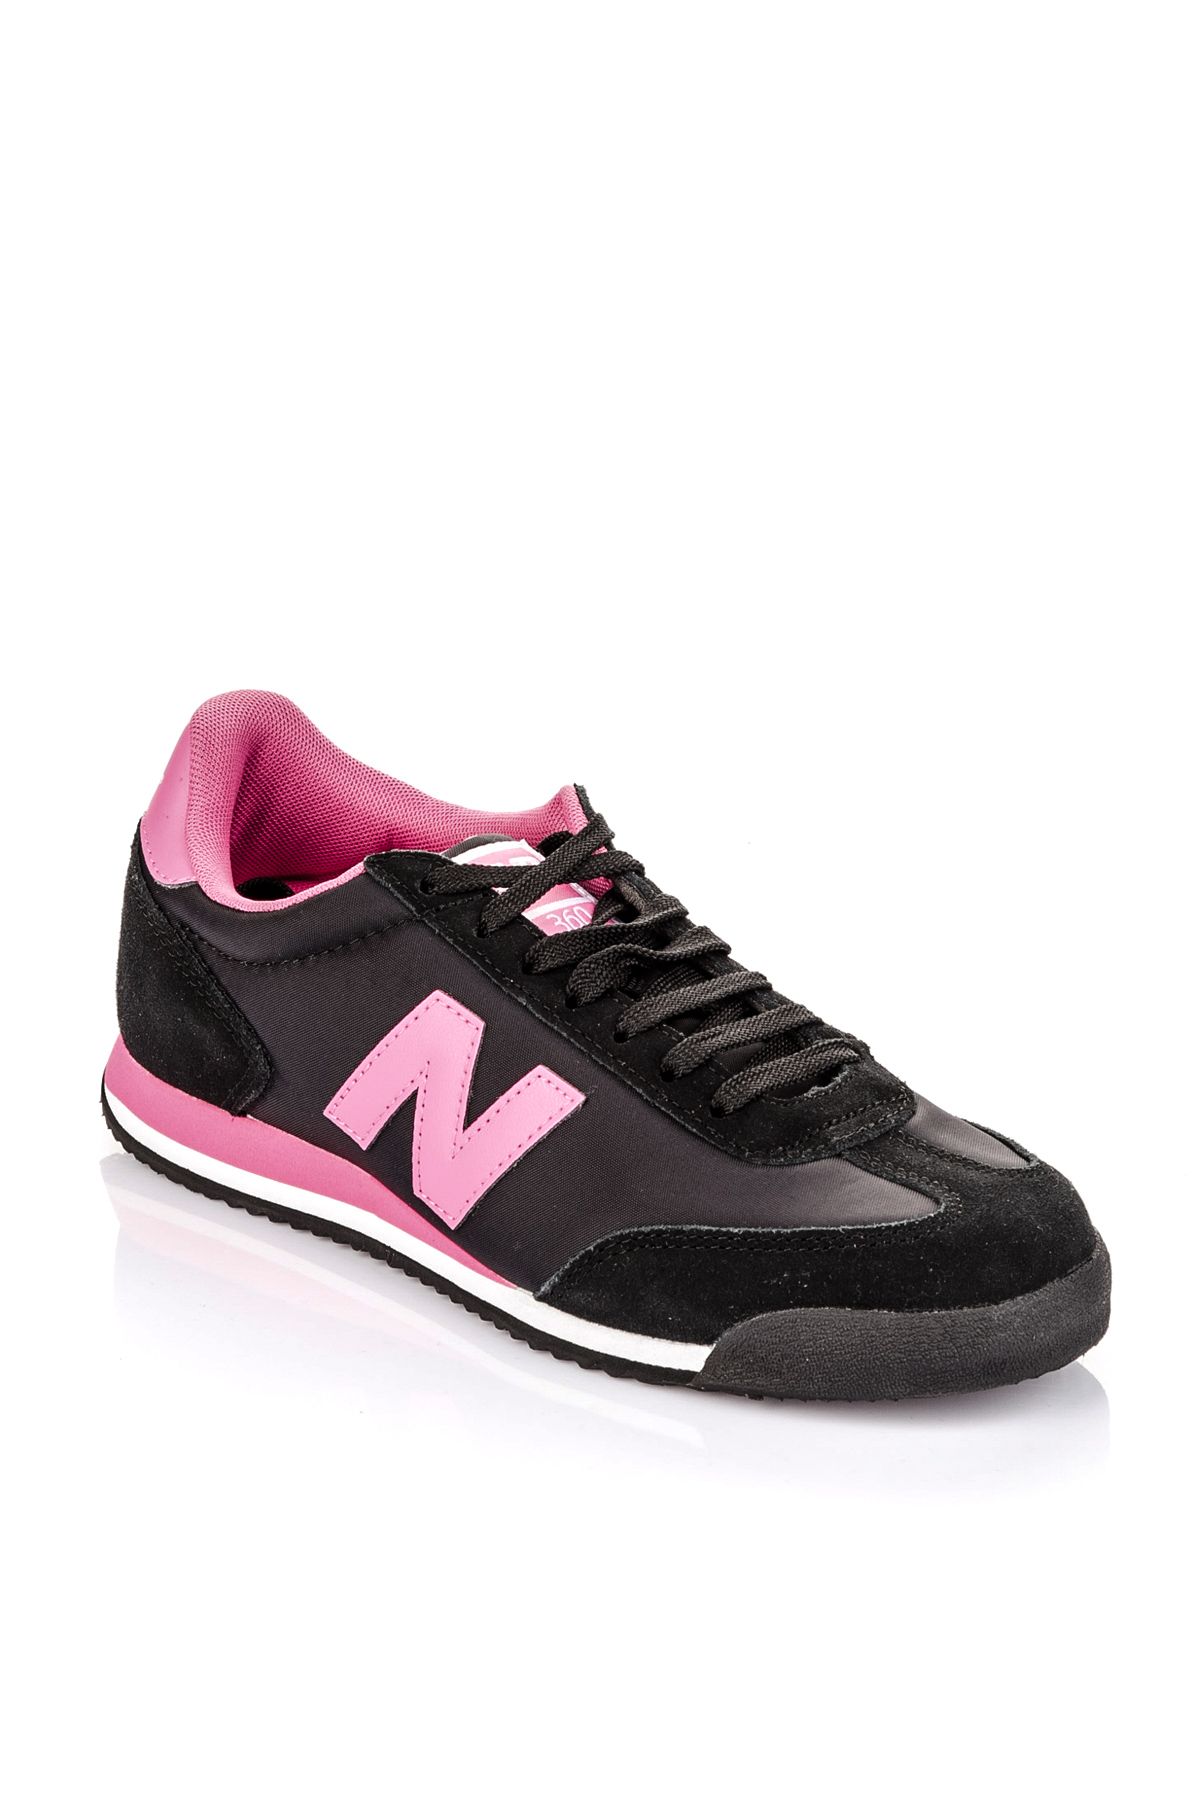 New Balance 360 Kadın Spor Ayakkabı - WL360SNB Yorumları - Trendyol